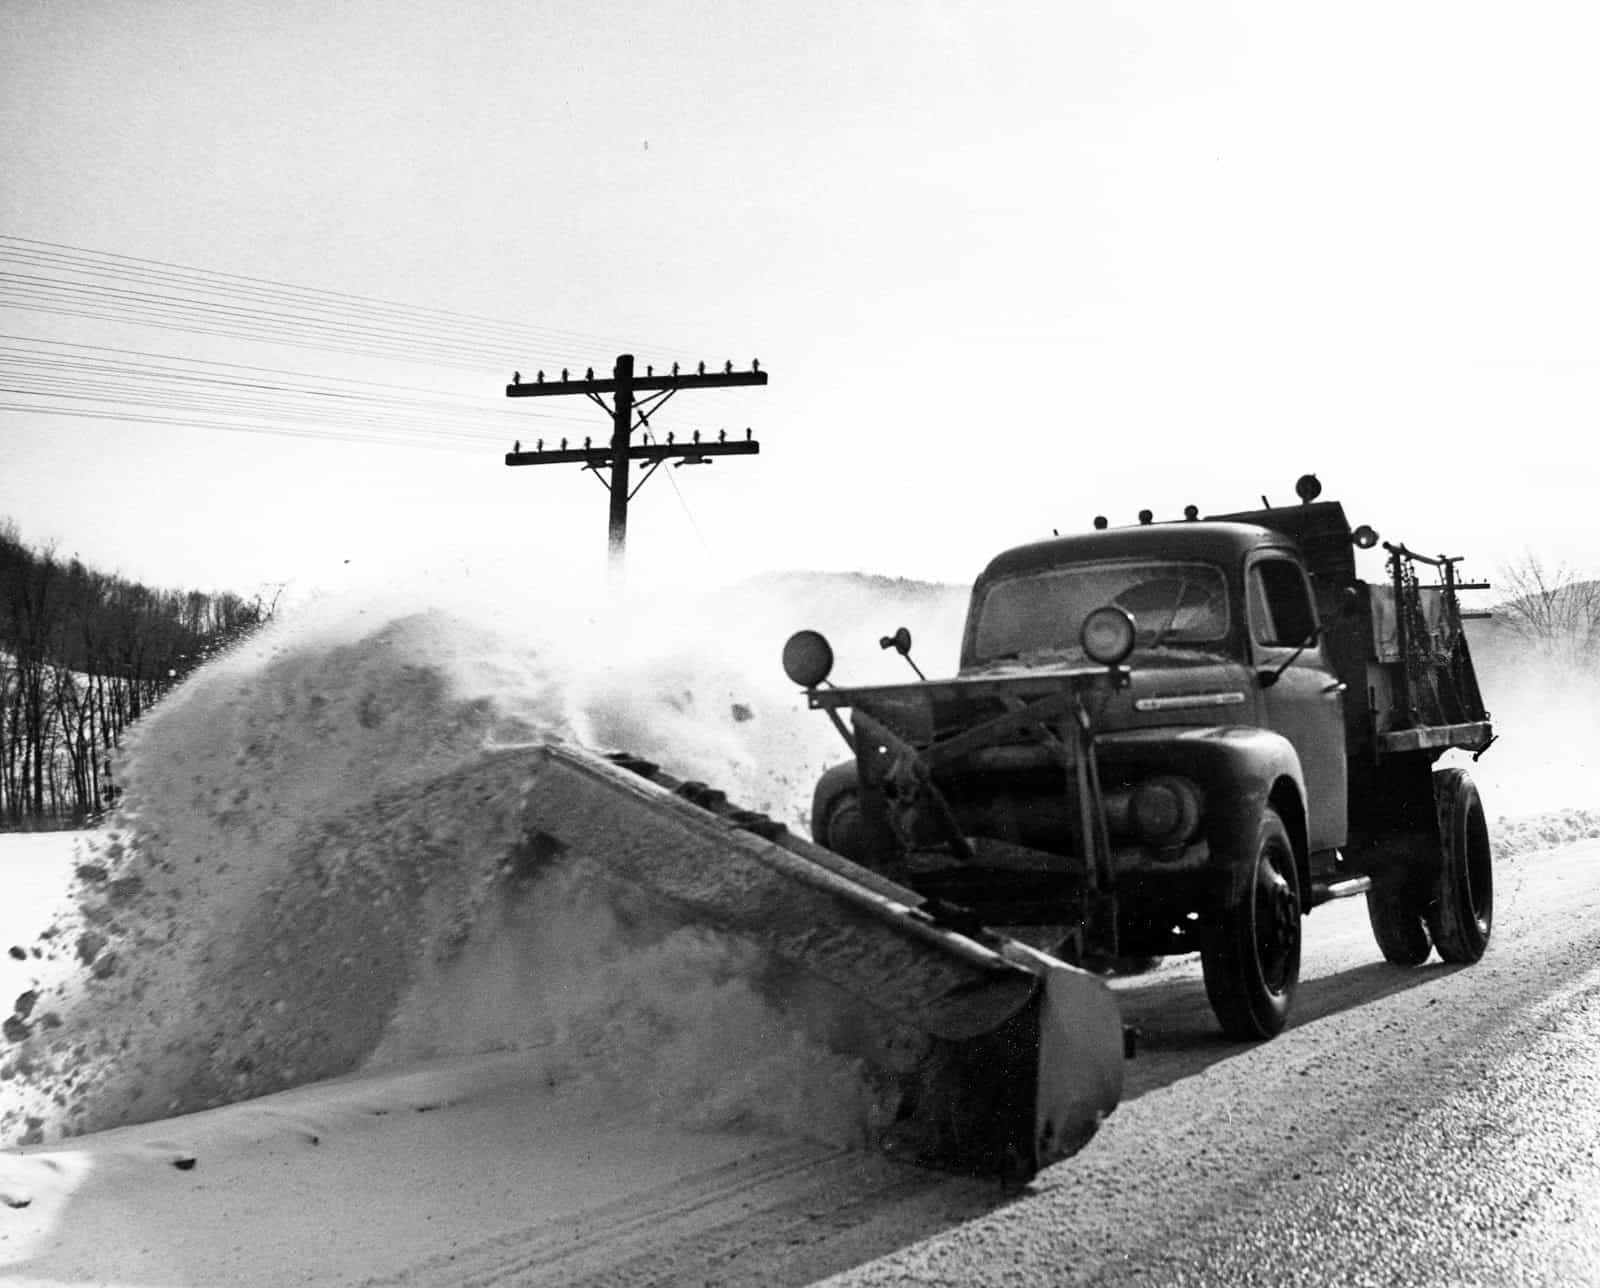 Historic Snow Plow (Feb 1955) VTrans | Flickr